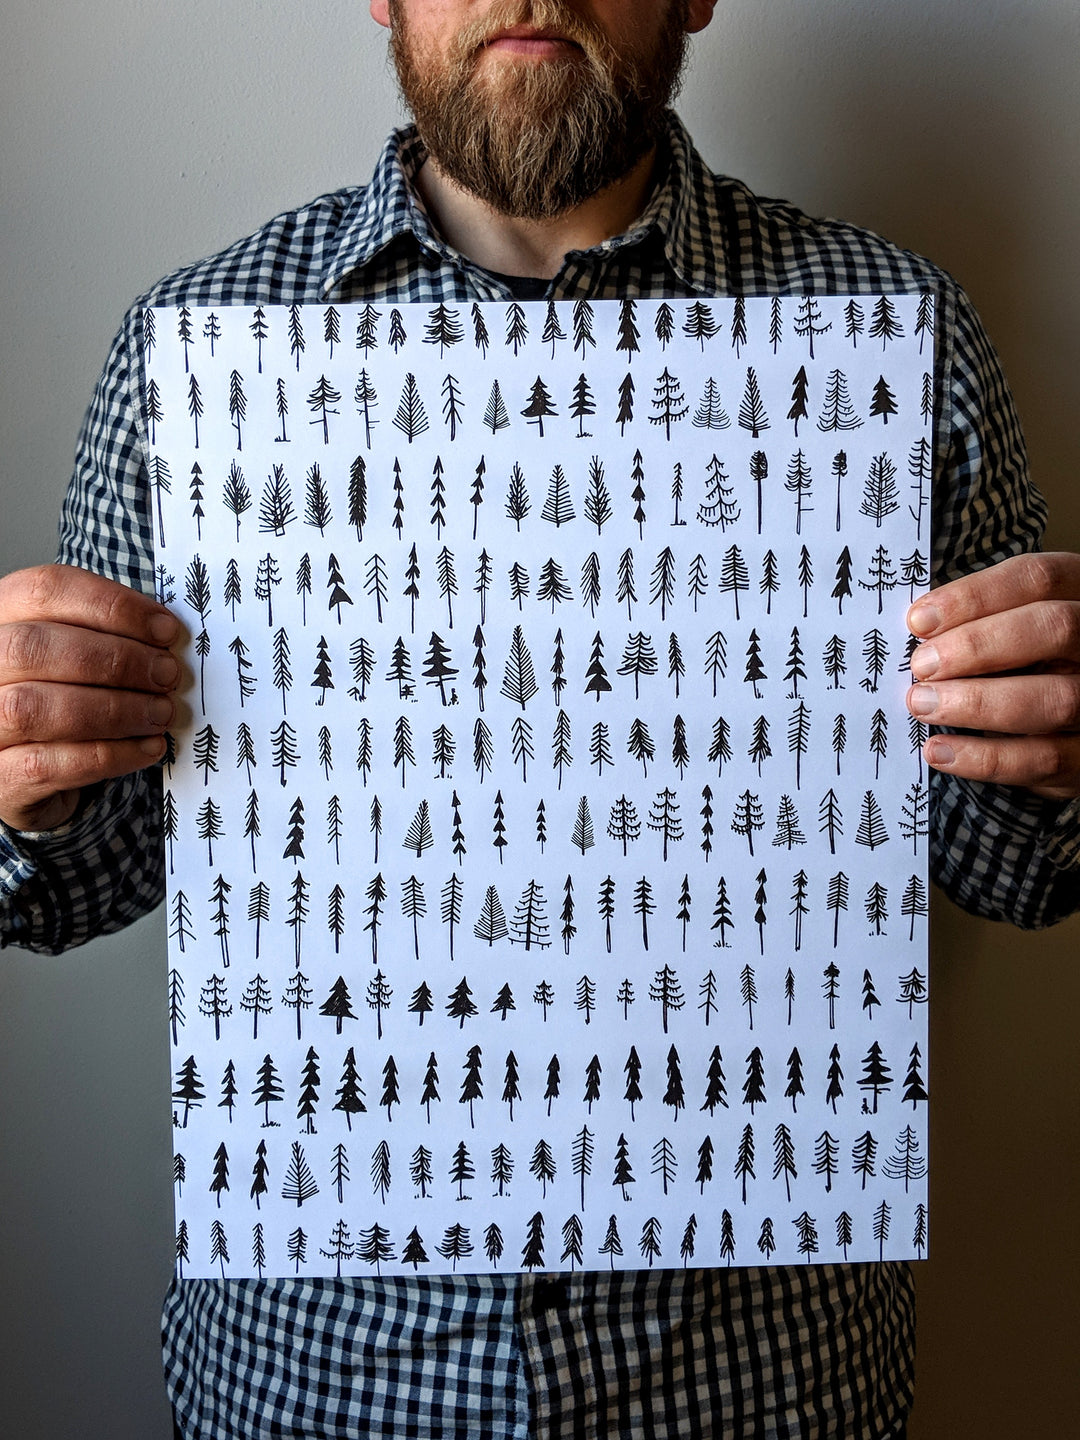 Simple Pines Print by Brainstorm - Pine Trees! 